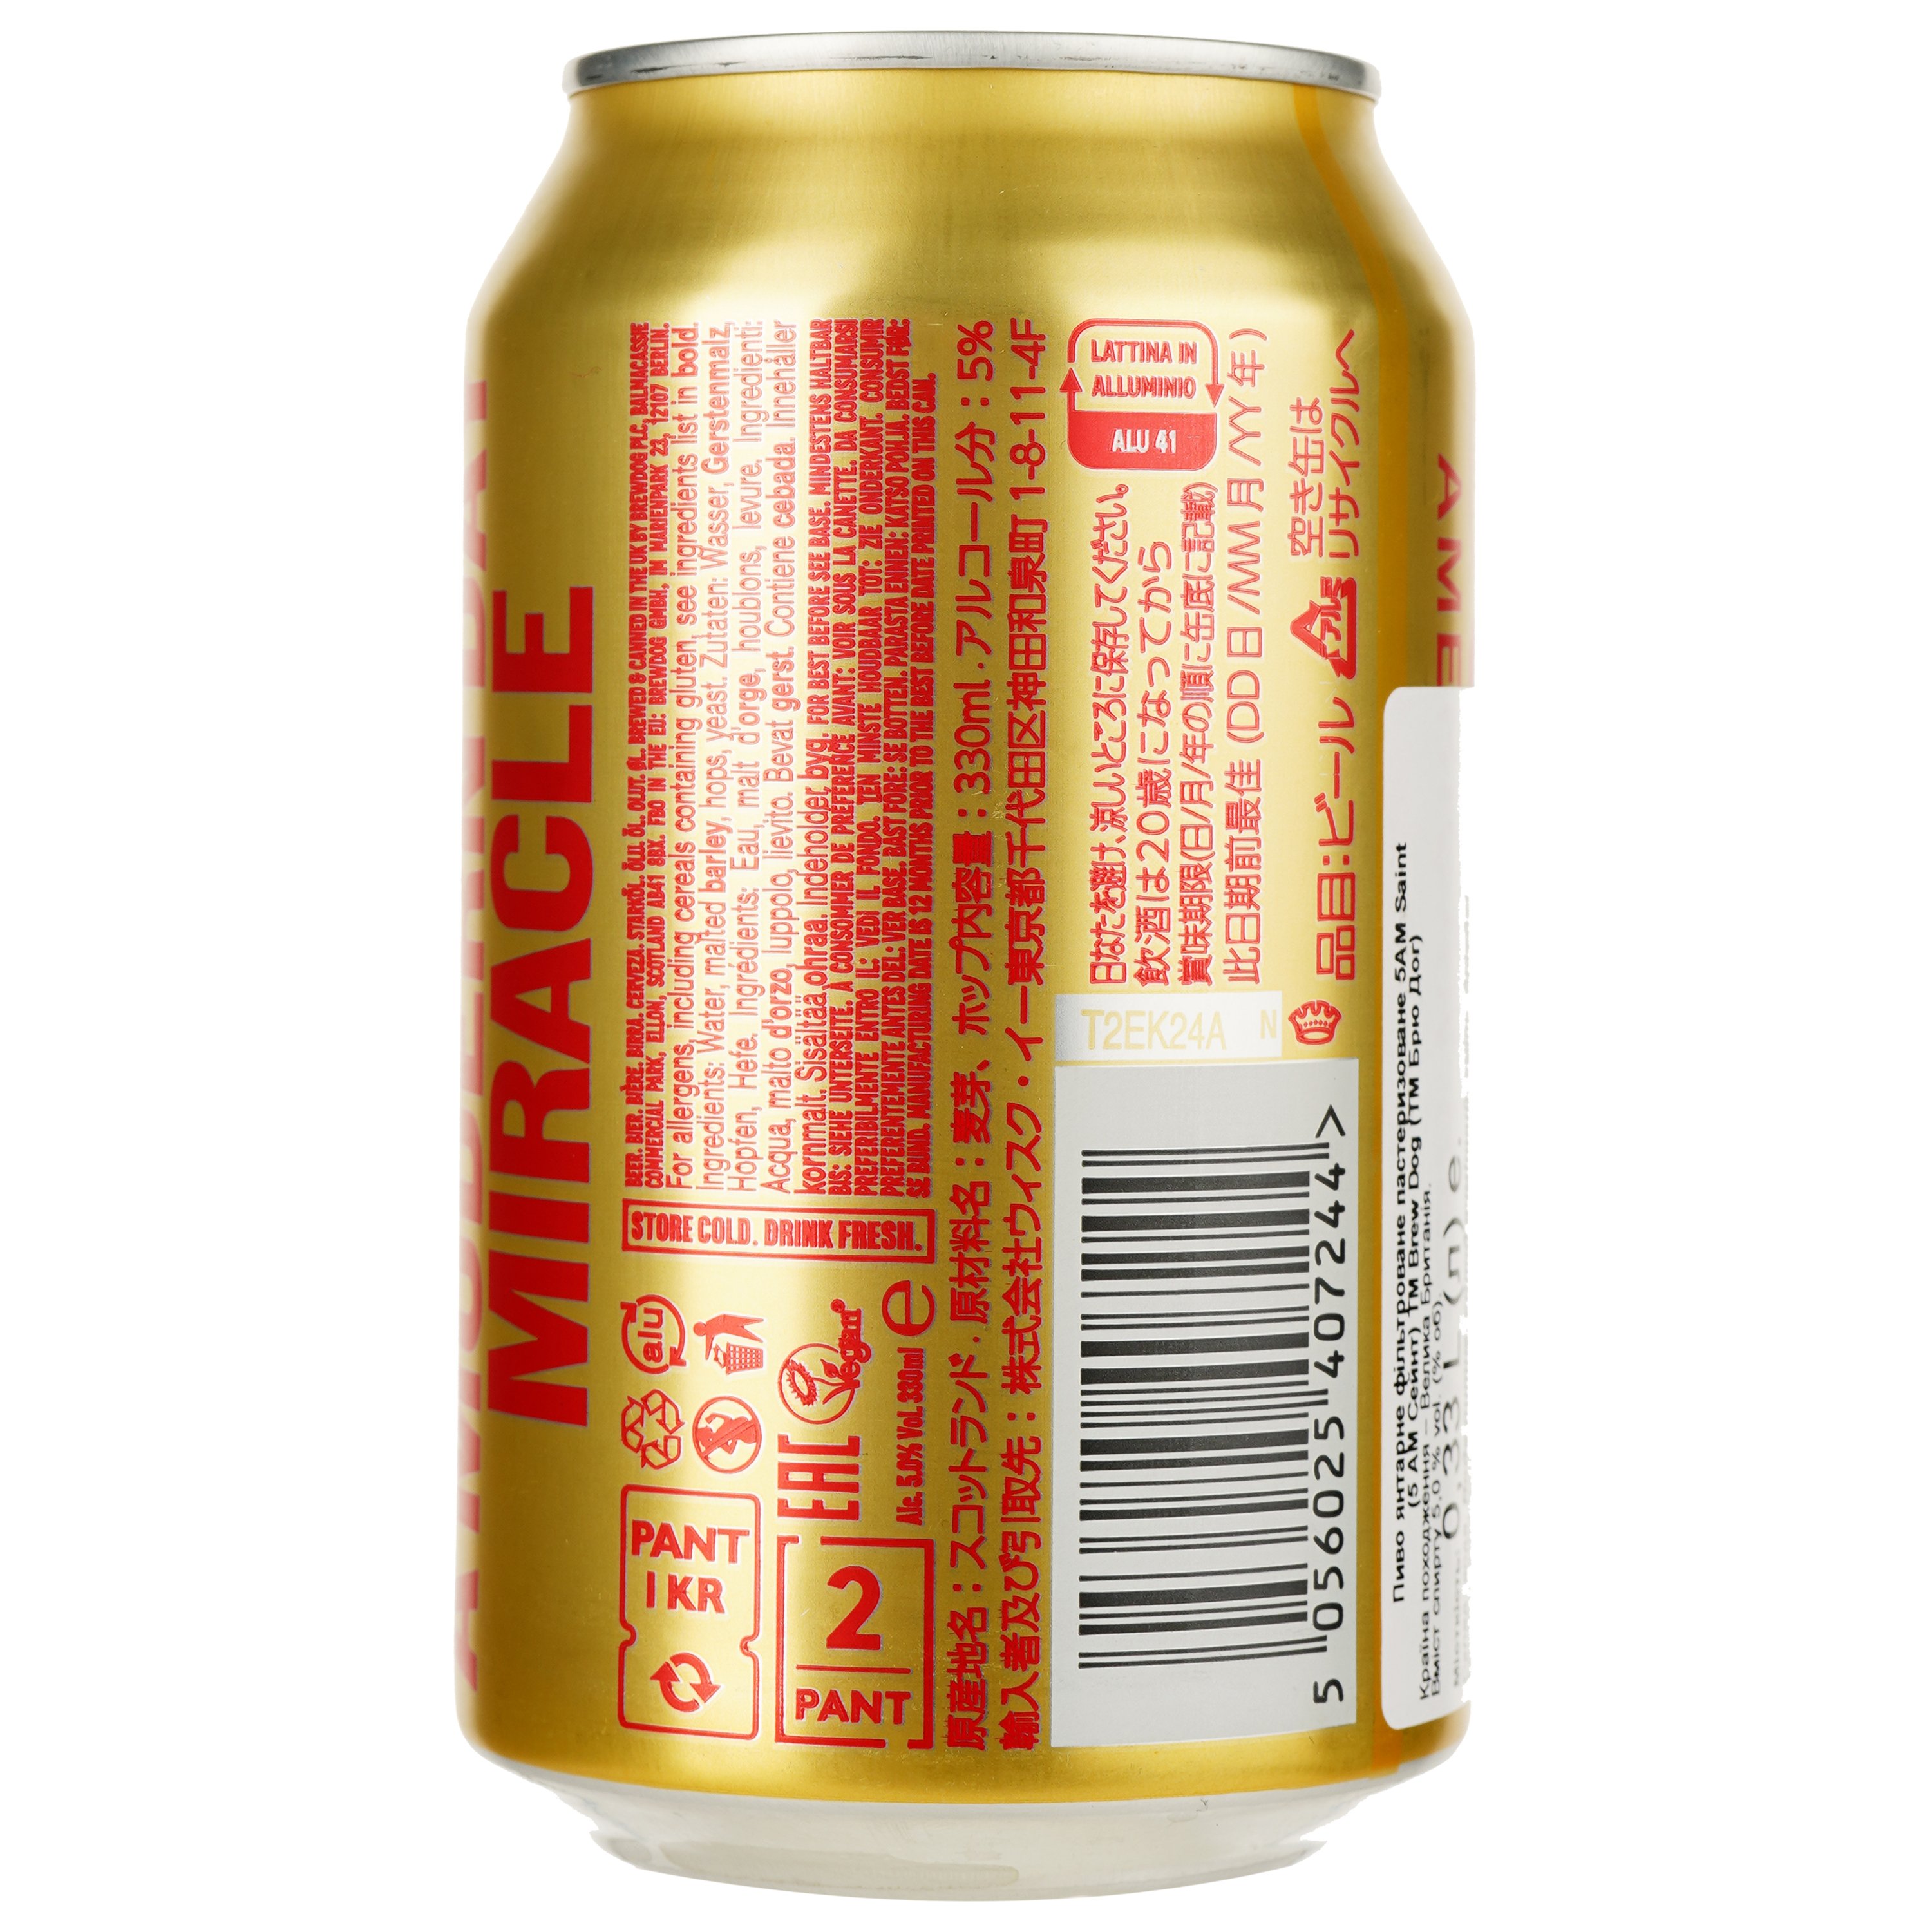 Пиво BrewDog 5AM Saint, красное, фильтрованное, 5%, 0,33 л (15641) - фото 2